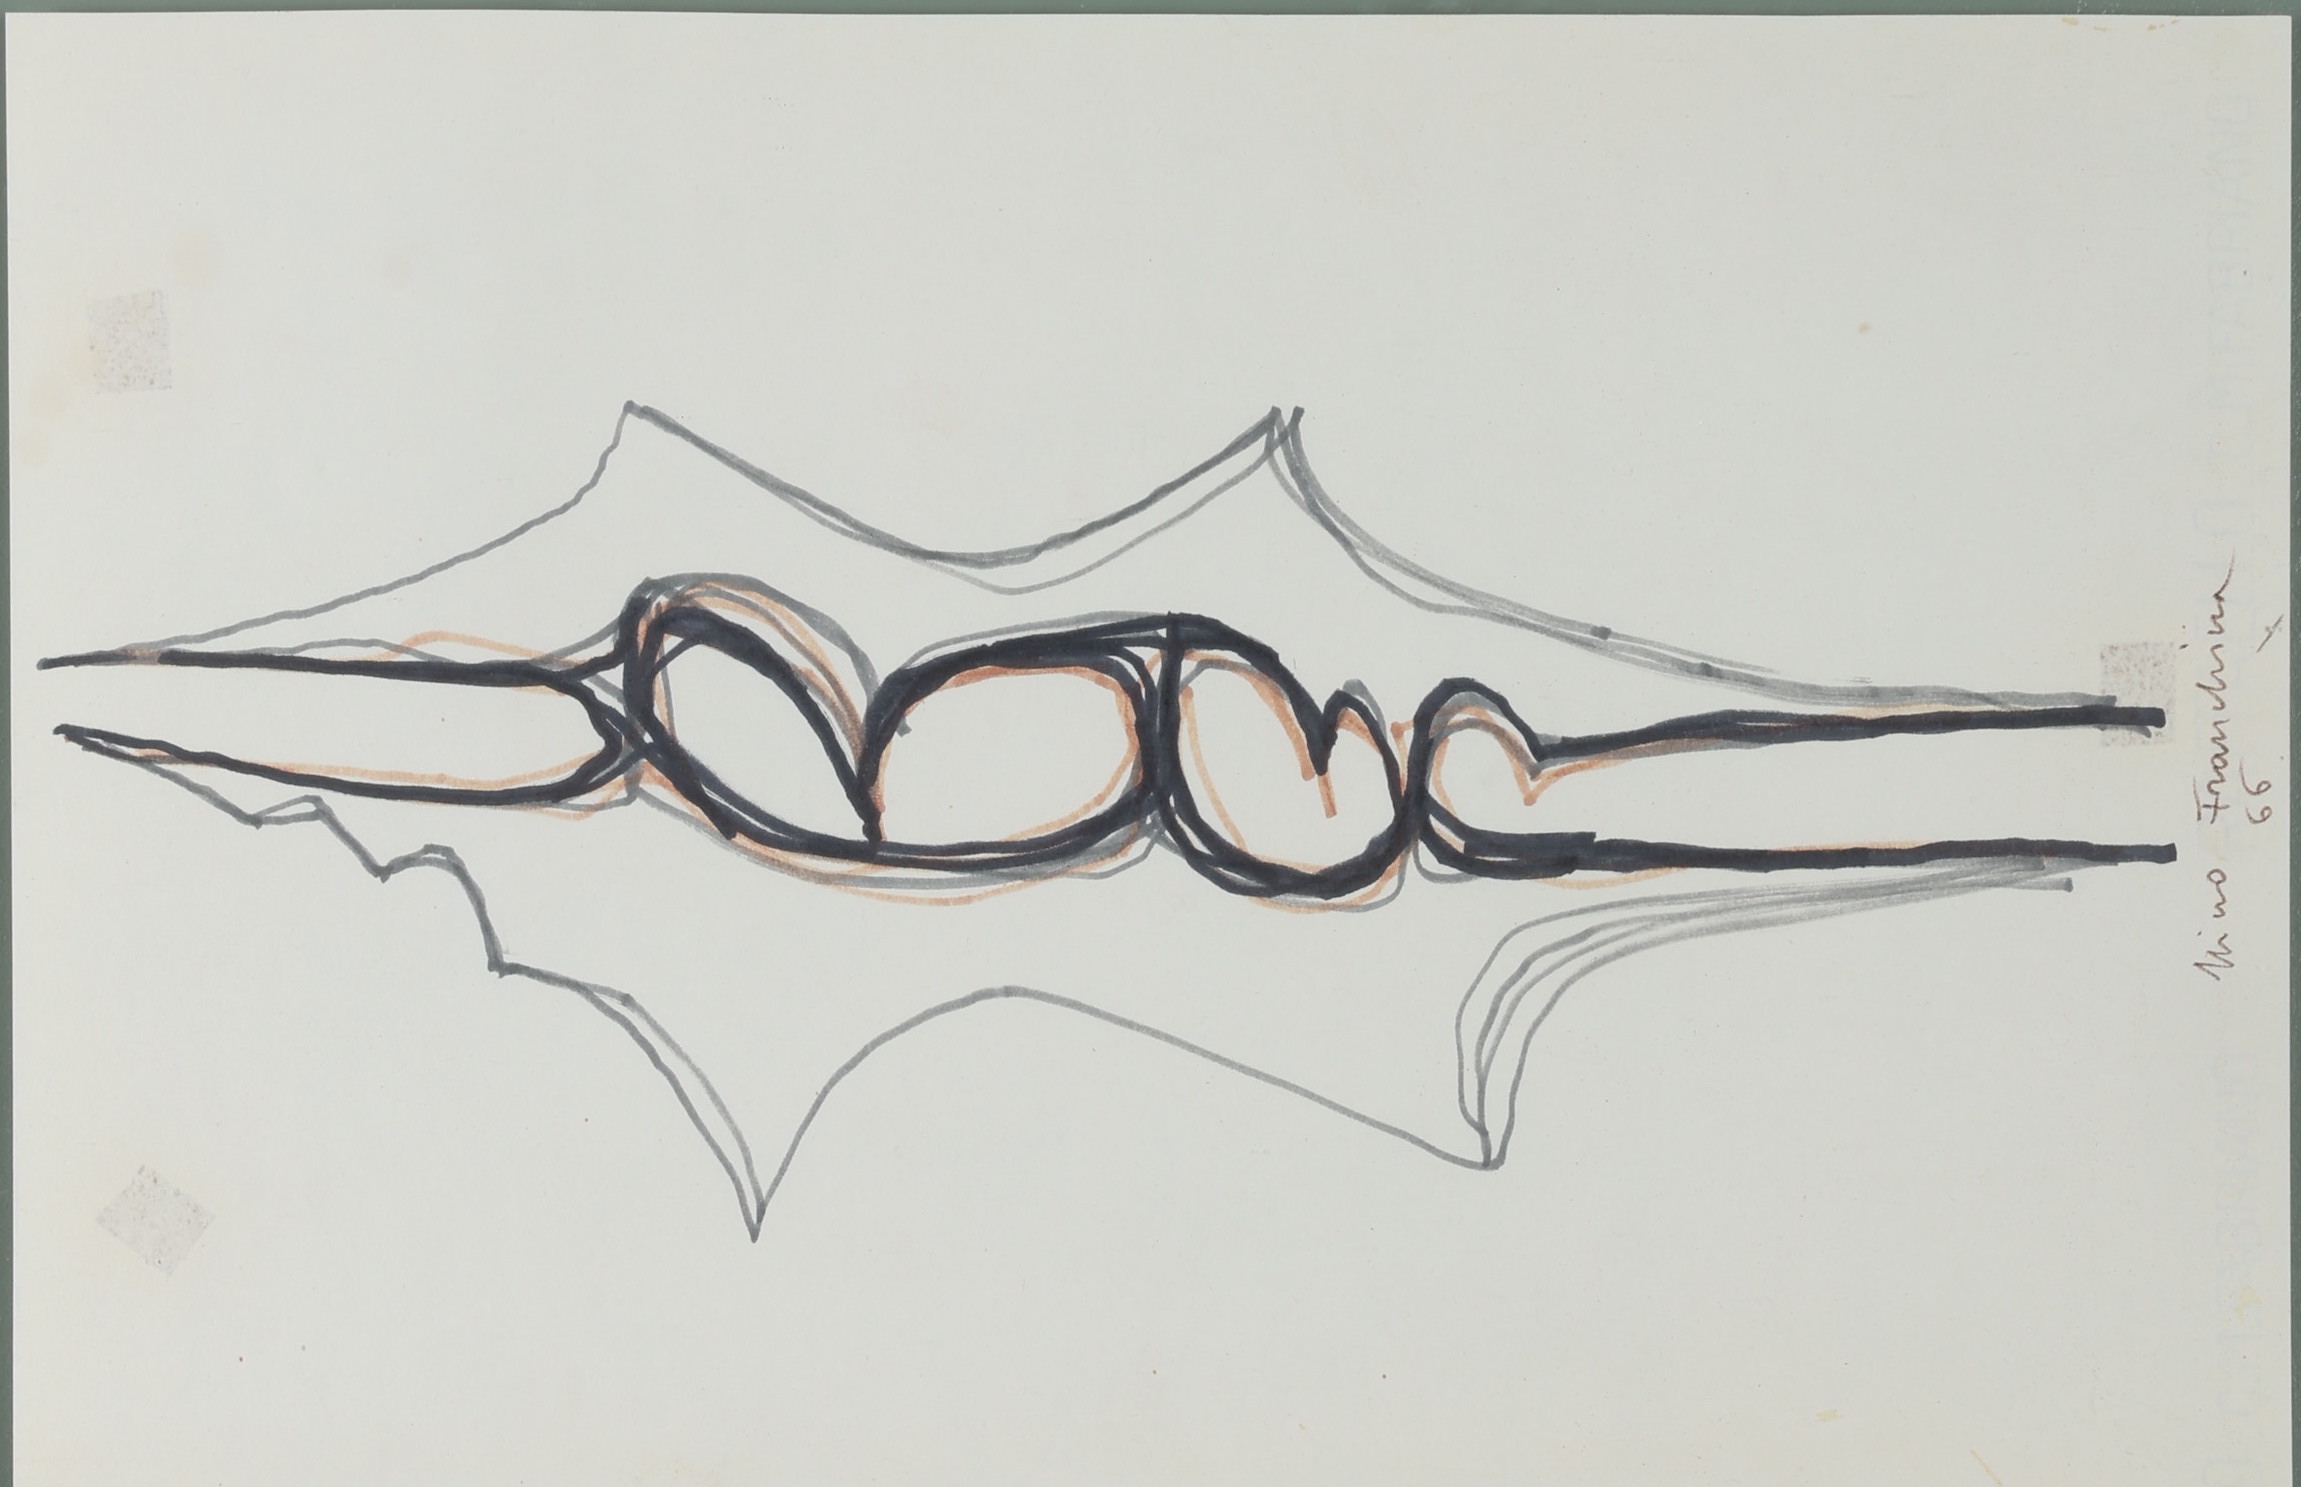 Franchina, Nino (1912-1987), Untitled drawing (1966)